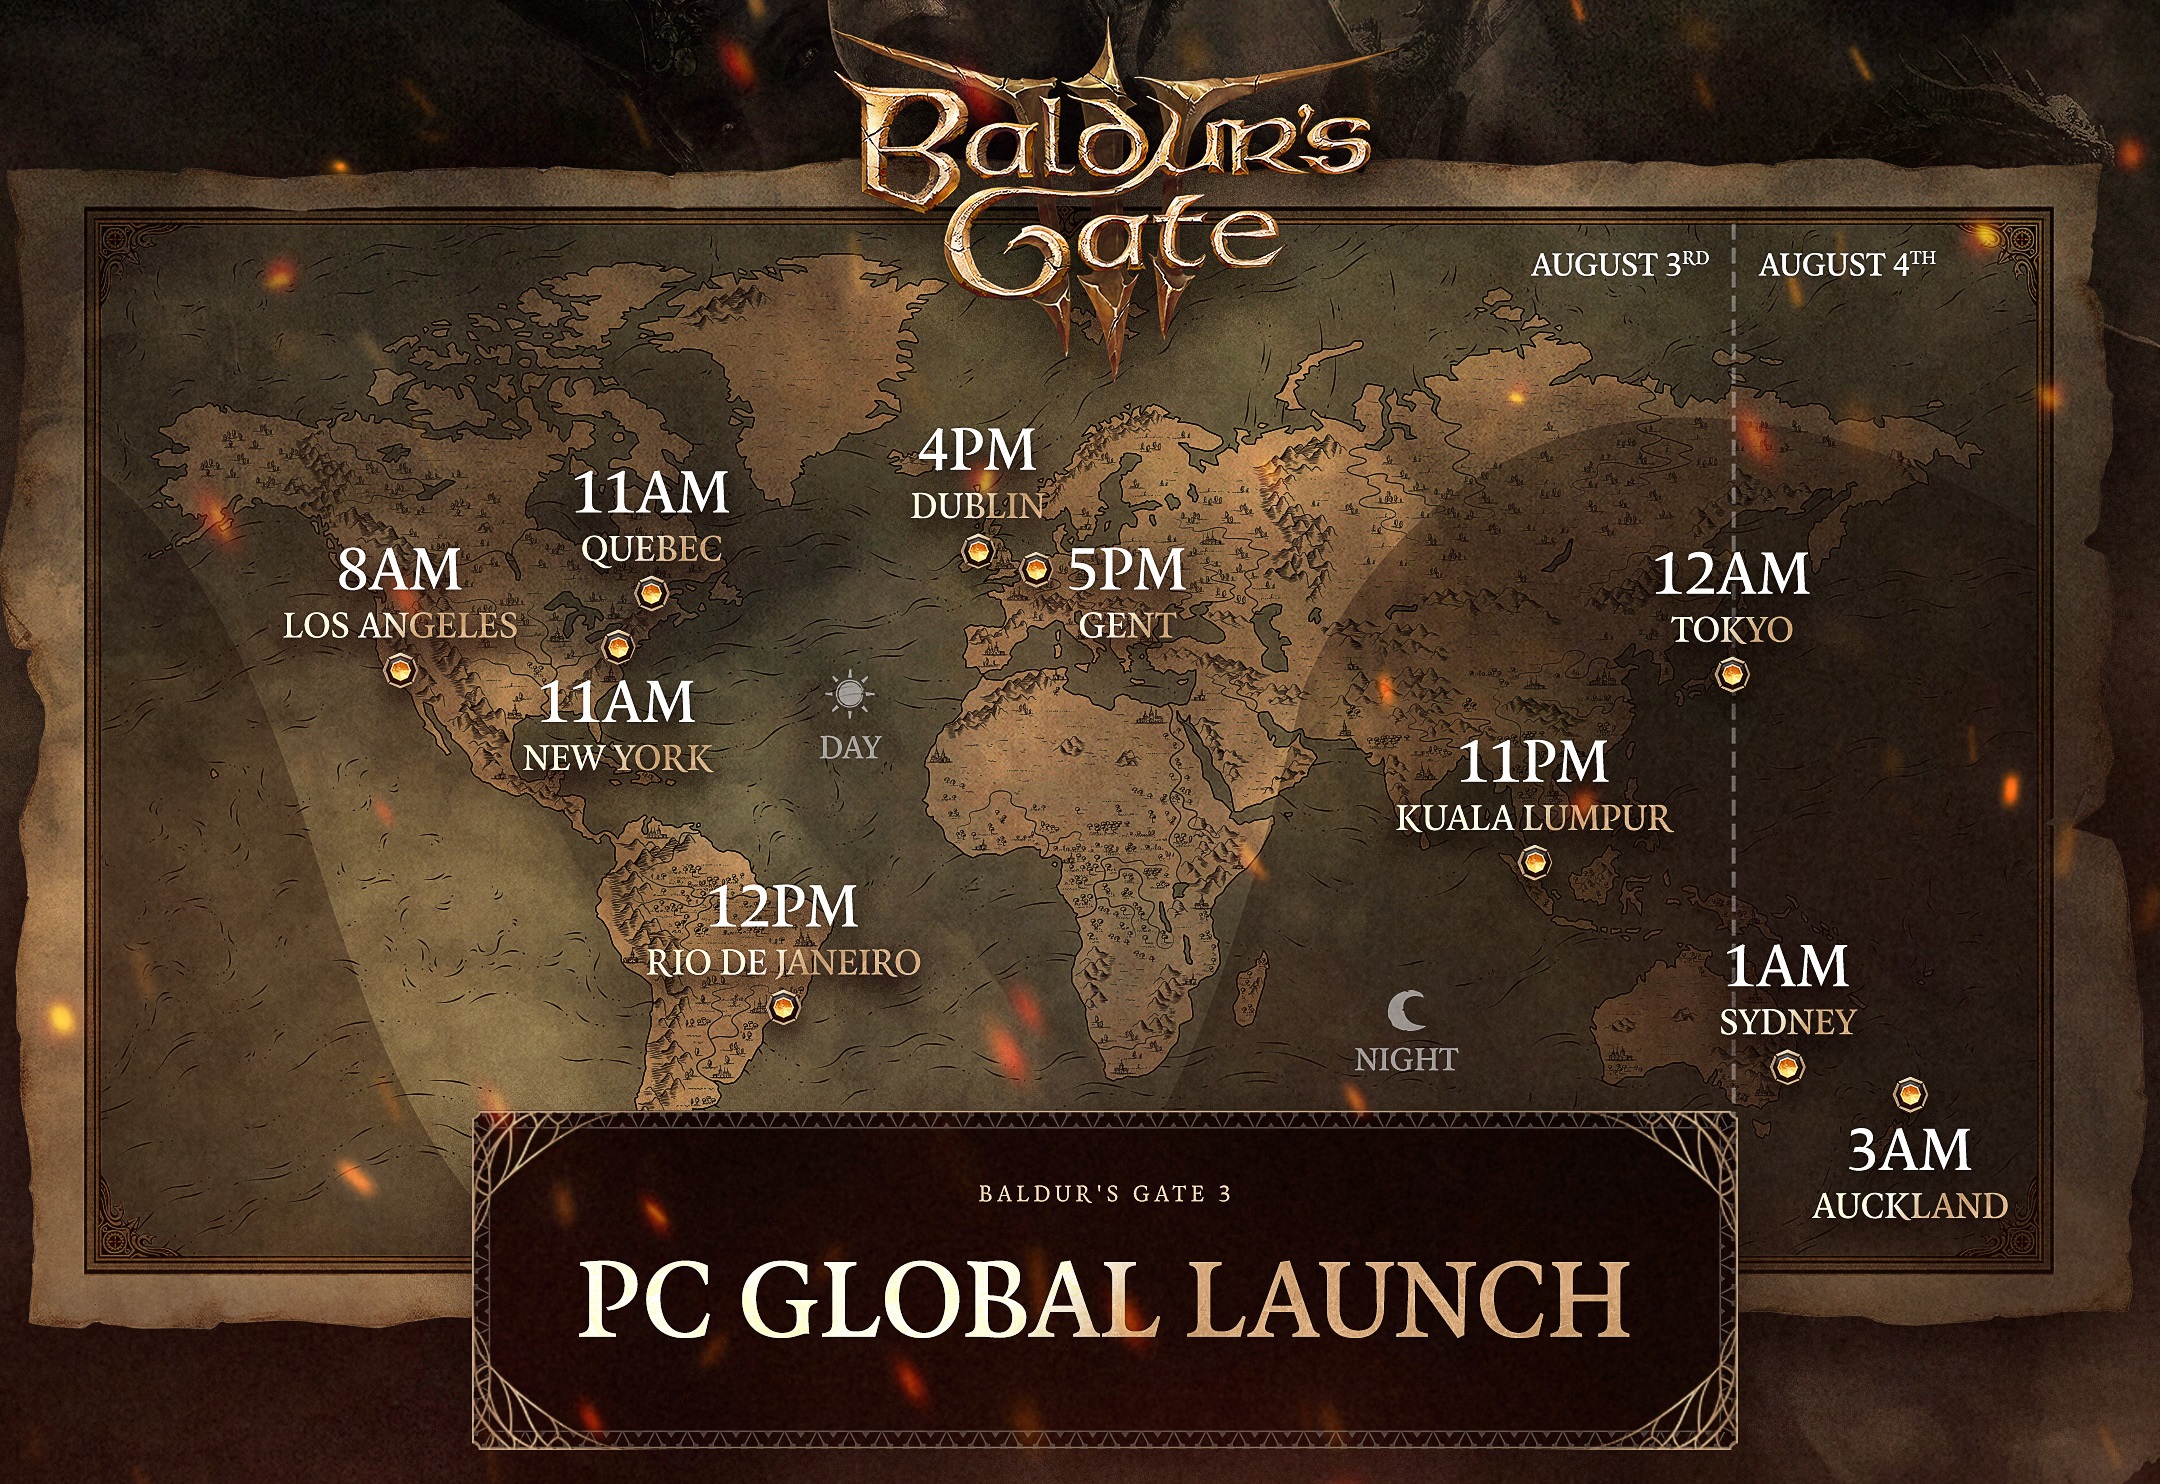 Global release times of Baldur's Gate 3